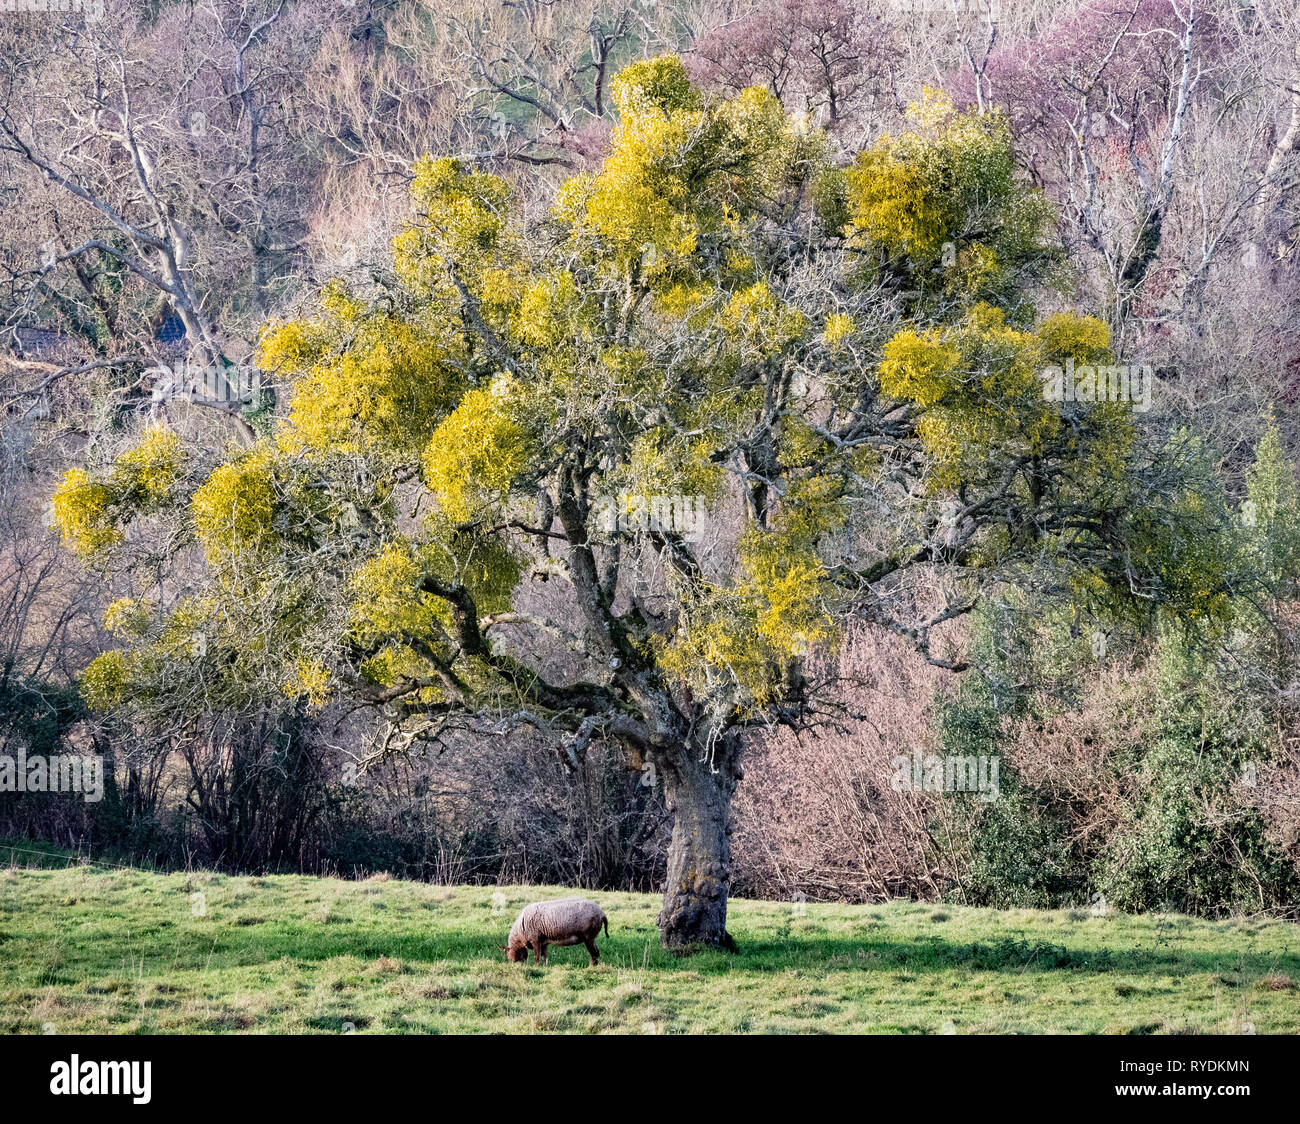 Baum im Winter in hemiparasitic Europäischen Mistel Viscum album behängt, so erscheinen in vollem Blatt - Slad tal Gloucestershire Cotswolds UK Stockfoto